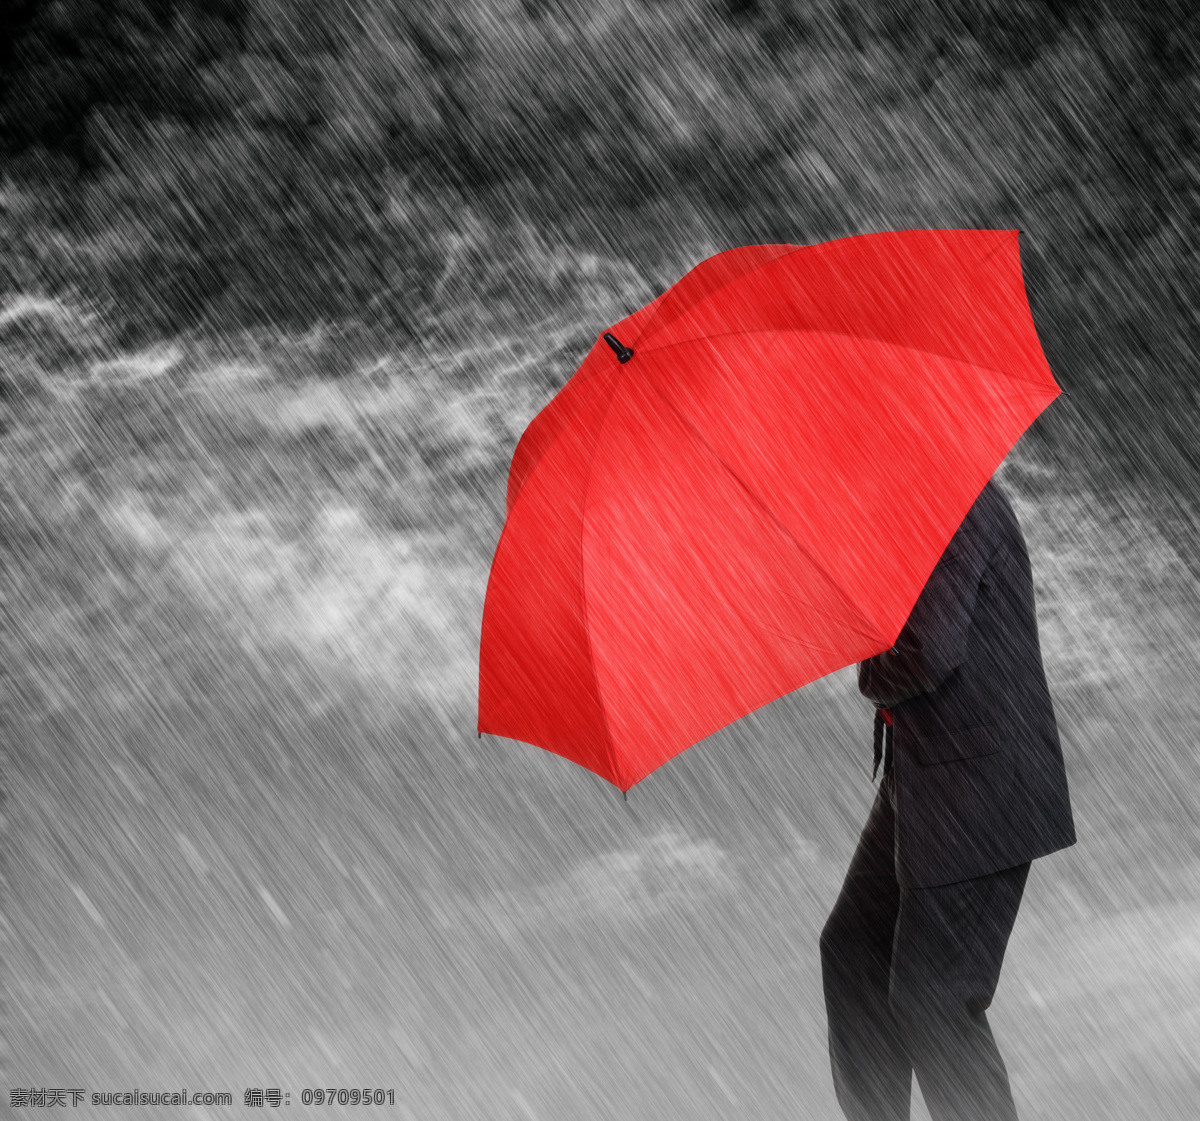 雨 中 打着 红色 雨伞 男人 雨中 红色雨伞 商务人士 生活人物 人物图片